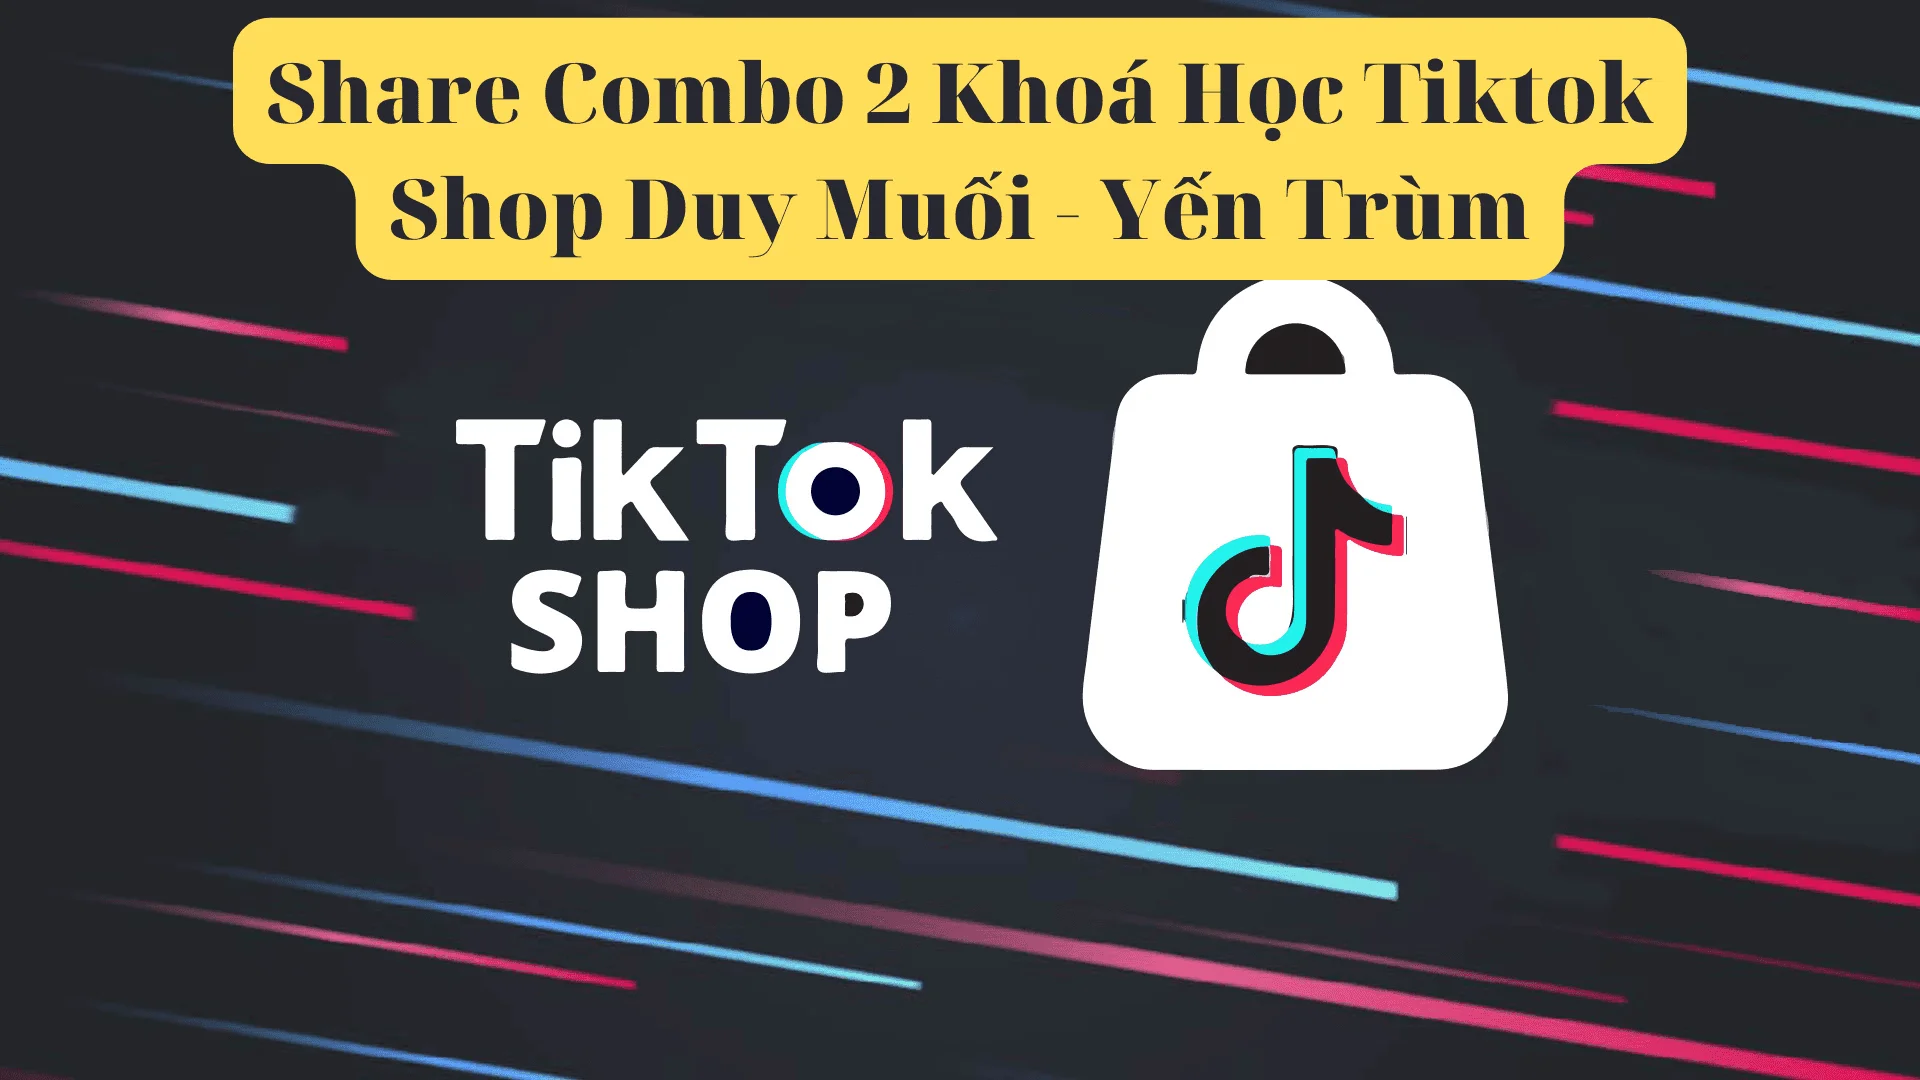 Share Combo 2 Khoá Học Tiktok Shop Duy Muối - Yến Trùm